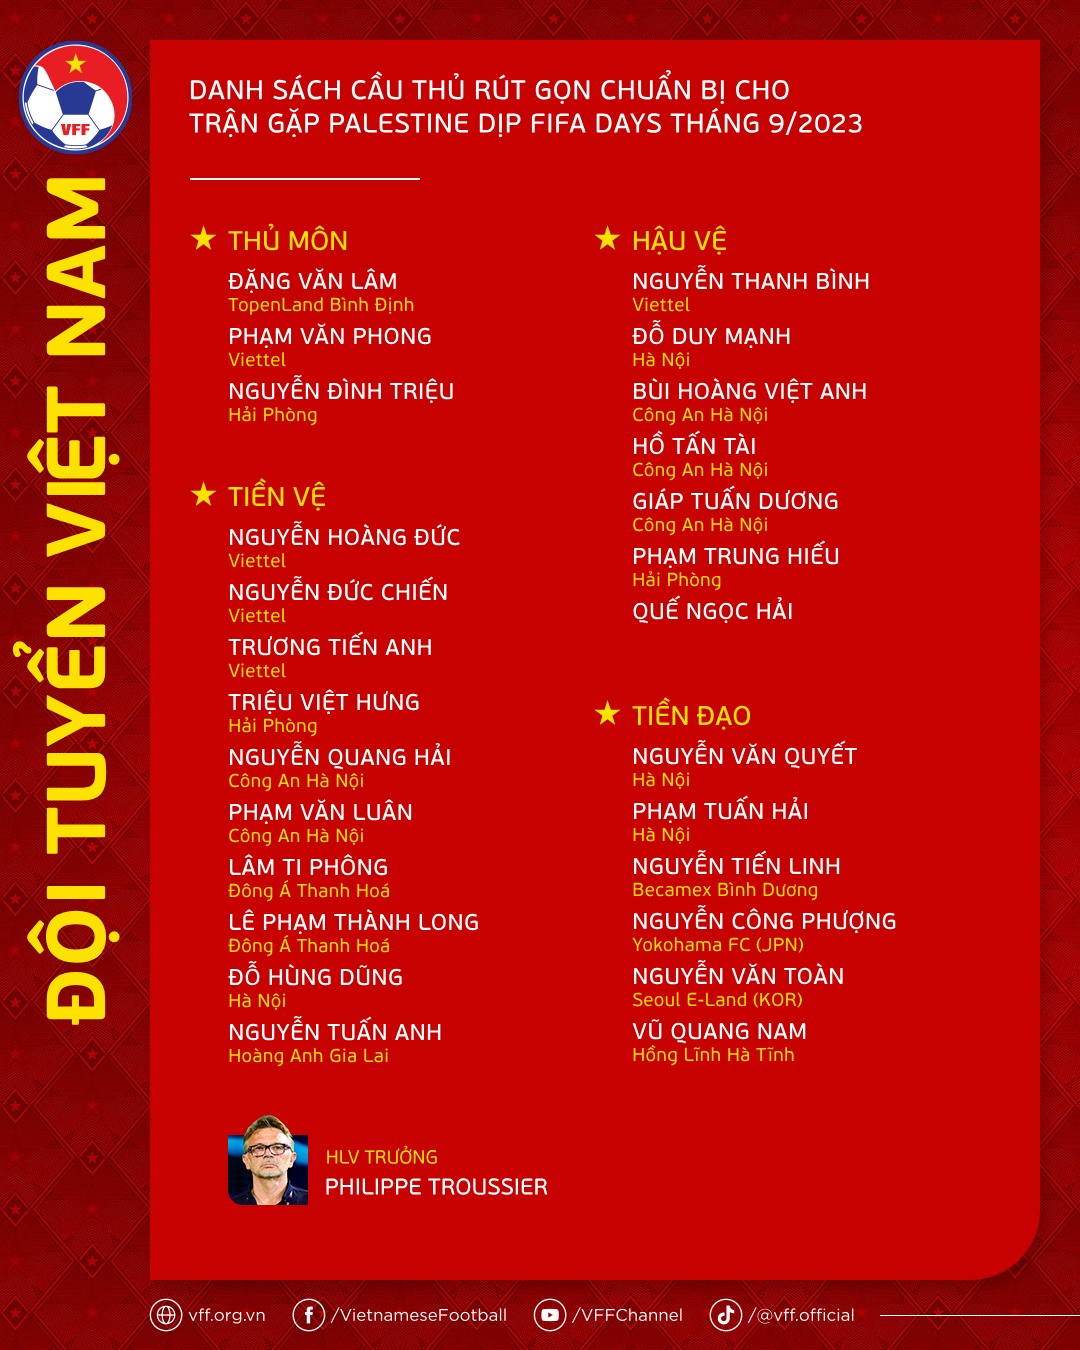 Danh sách đội tuyển Việt Nam được chốt vào chiều 8.9

VFF